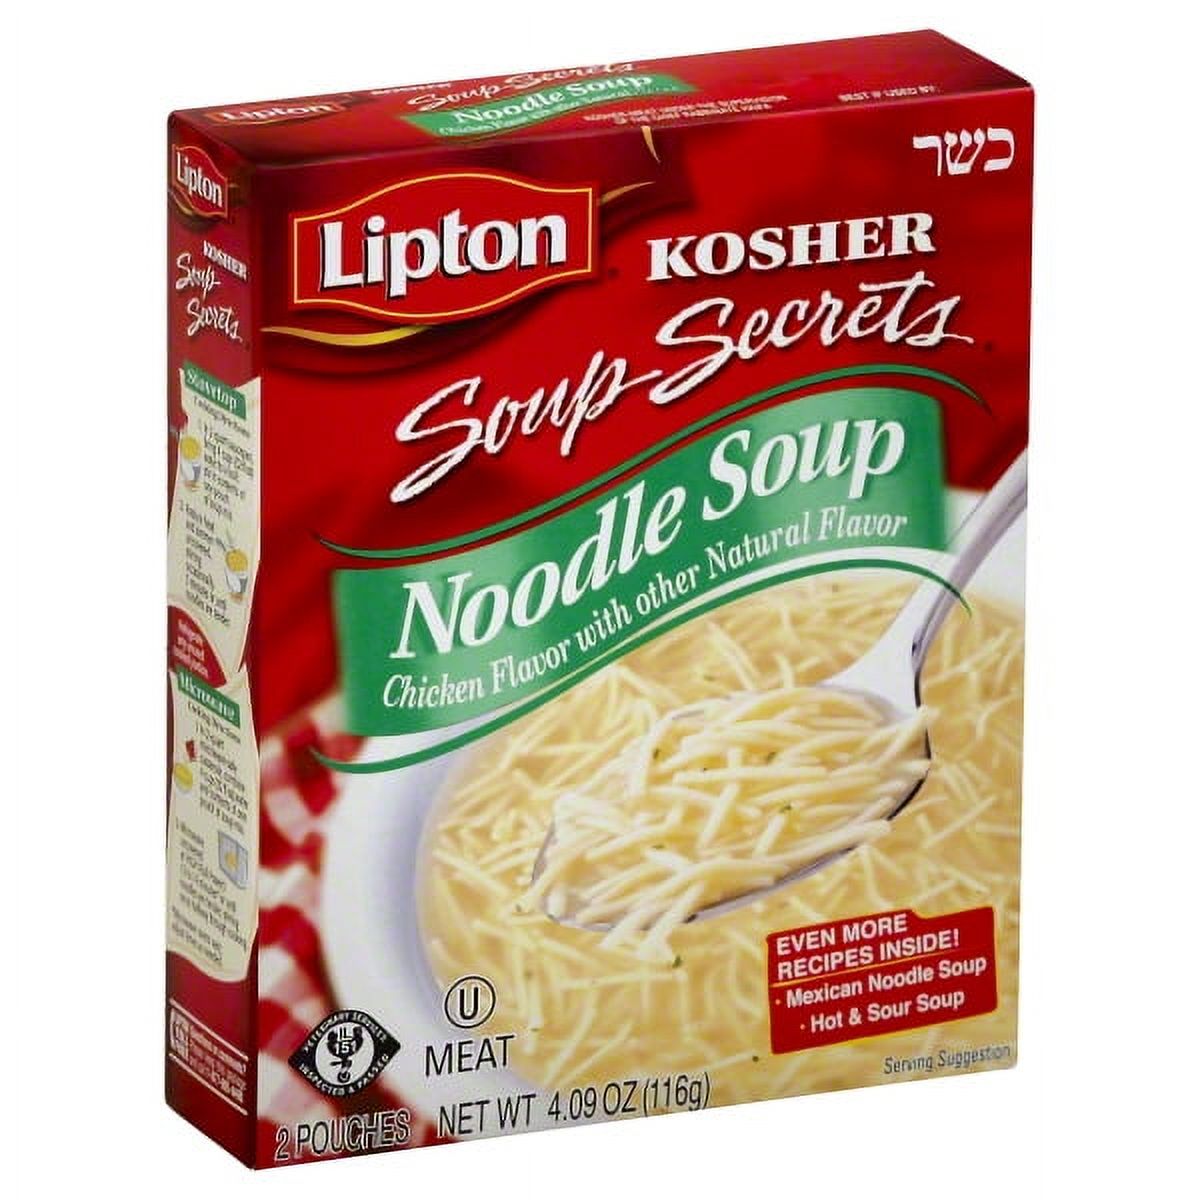 Lipton Soup Secrets Noodle Soup With Chicken, 4.09 oz - image 1 of 5